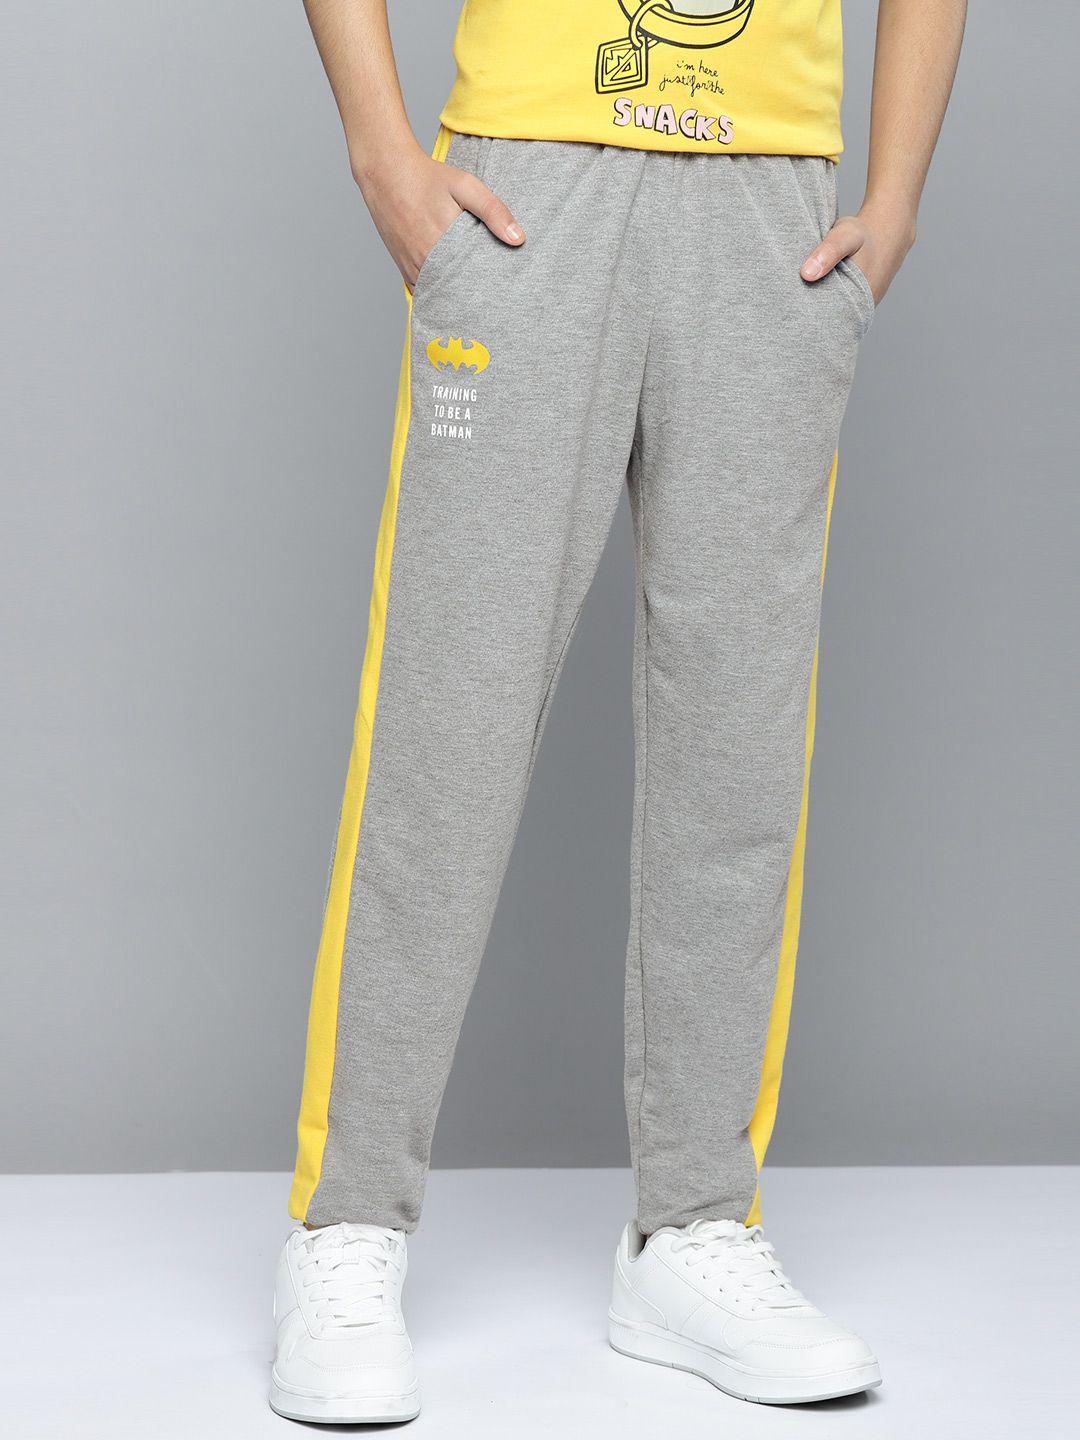 kook n keech batman teens boys grey melange & yellow solid side taping detail track pants